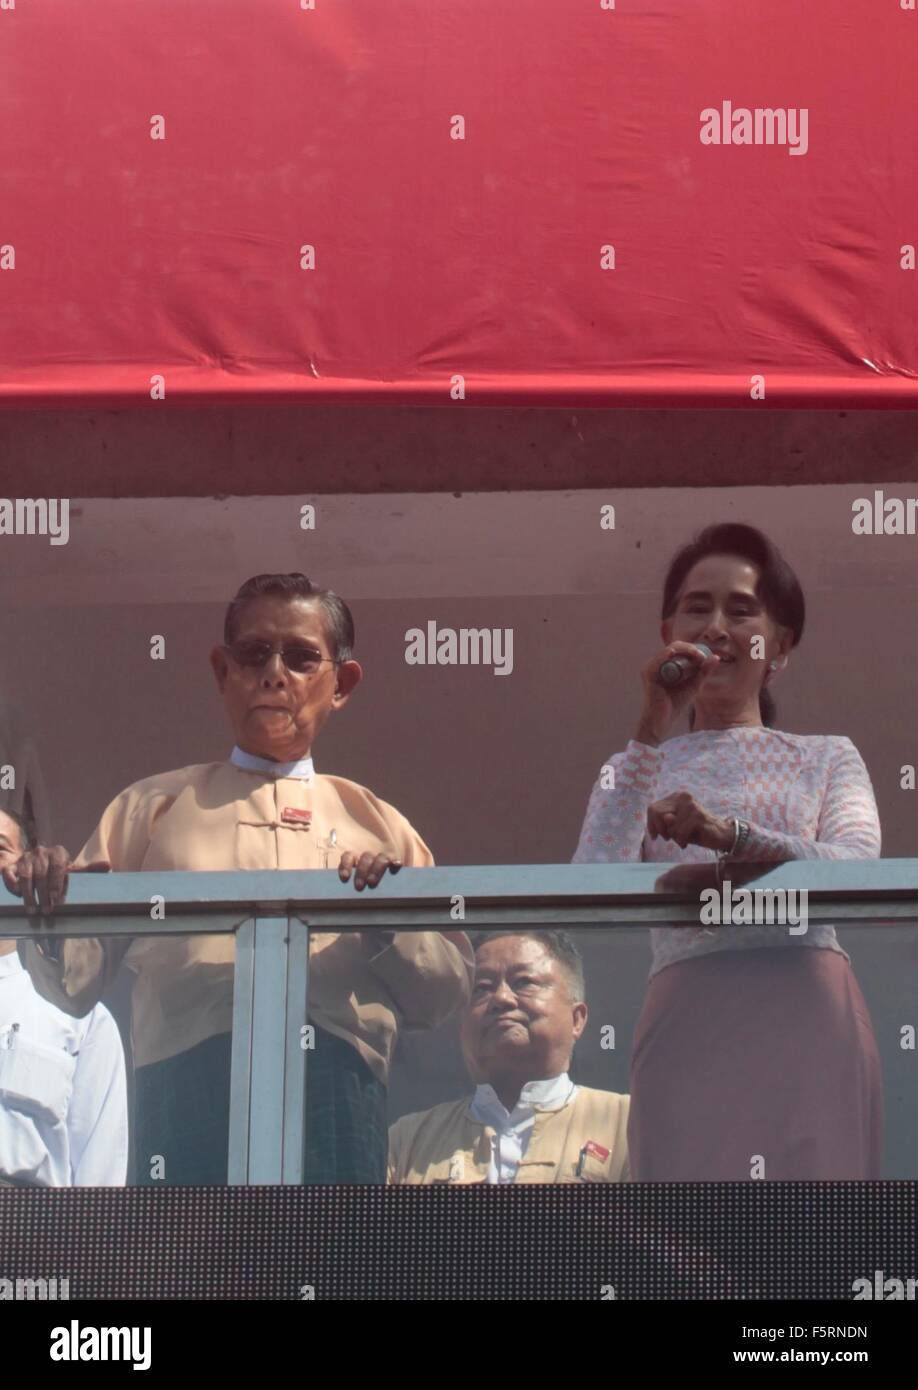 Yangon, Myanmar. 9. November 2015. Demokratie-Symbol Aung San Suu Kyi hält eine Rede an Unterstützer am Sitz der Nationalliga für Demokratie-Partei in Yangon, Myanmar, 9. November 2015. Suu Kyi sagte "Du weißt schon die Ergebnisse" Anspielungen auf einen Erdrutschsieg bei den historischen Wahlen in Myanmar. Bildnachweis: Arthur Jones Dionio/Alamy Live-Nachrichten Stockfoto